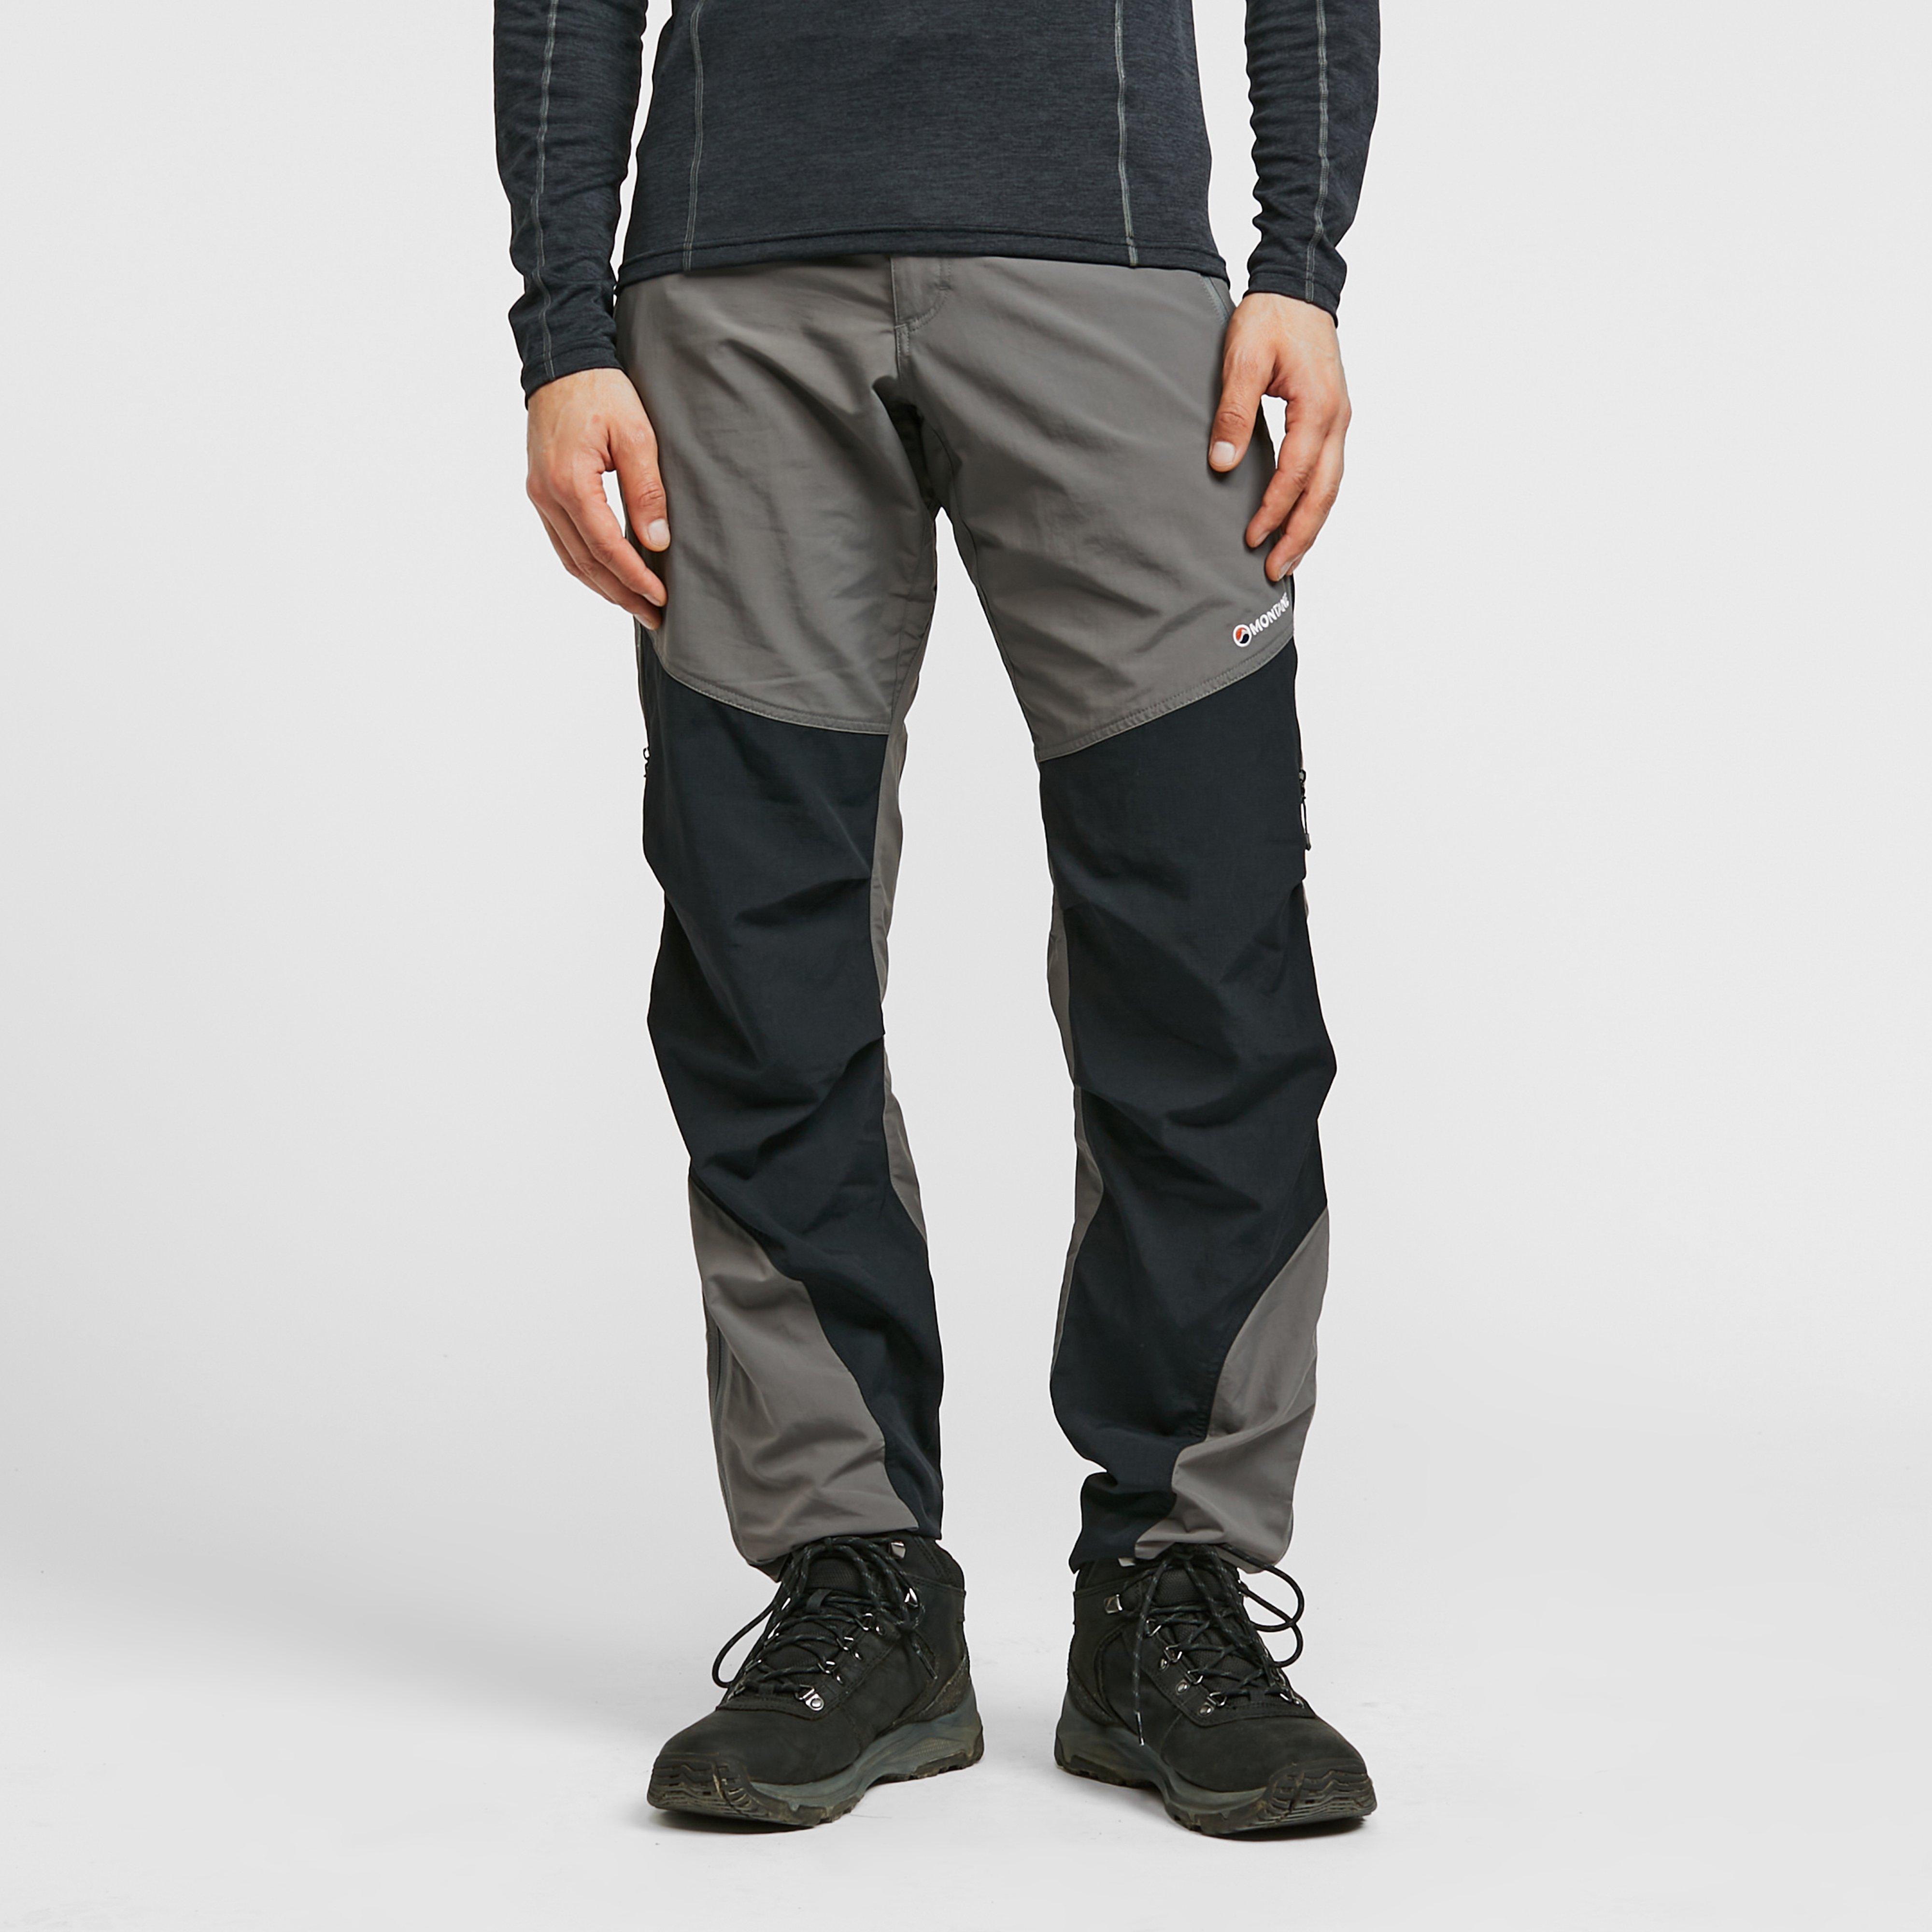 montane men's terra pants (regular & short) - grey, grey